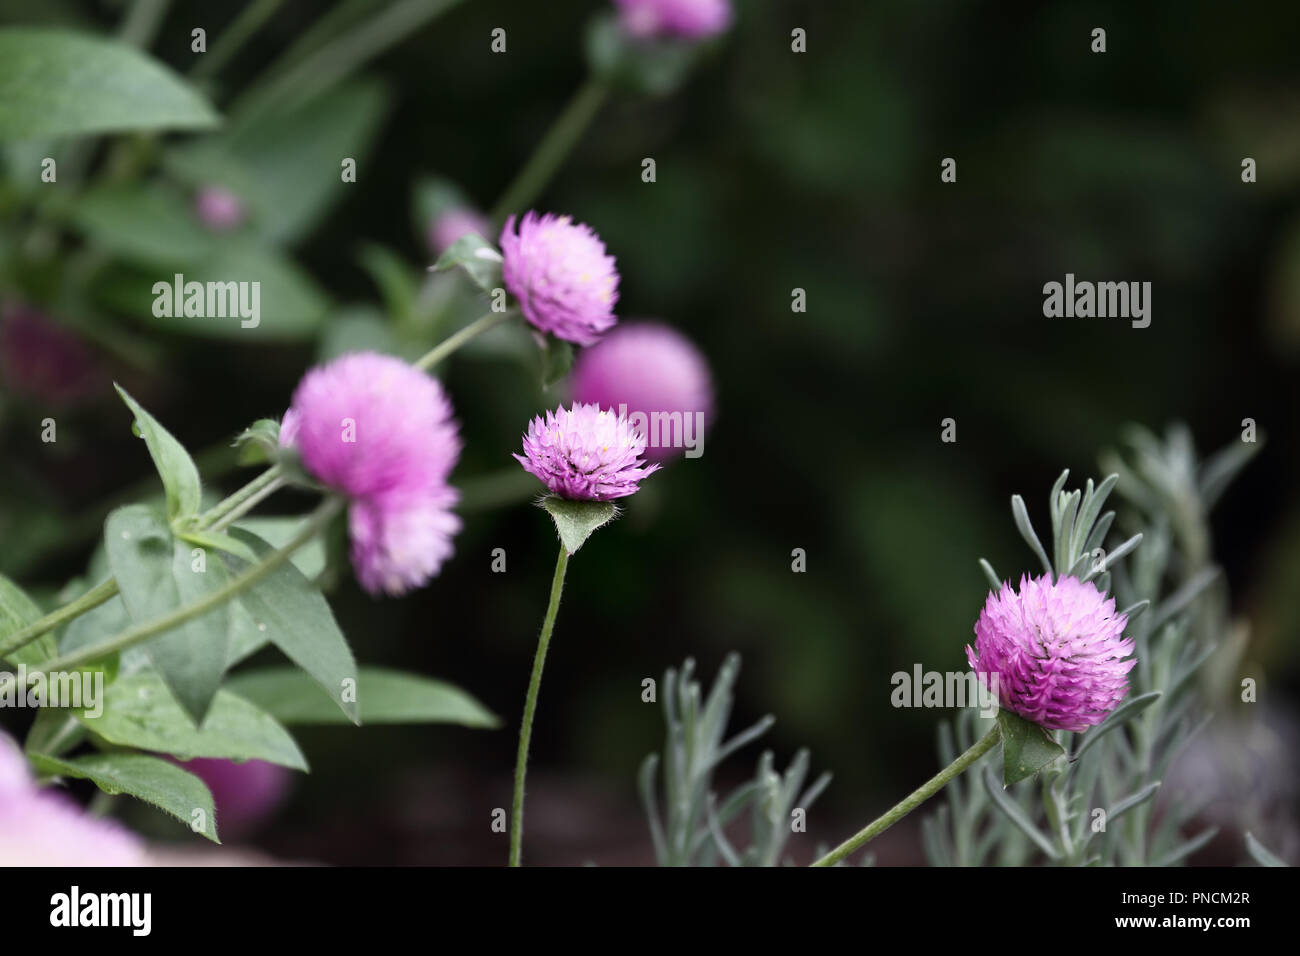 Globus Amaranth oder Gomphrena nana Blumen wachsen in einem Garten. Extrem flache Tiefenschärfe mit selektiven Fokus auf Blume in der Mitte vom Bild. Stockfoto